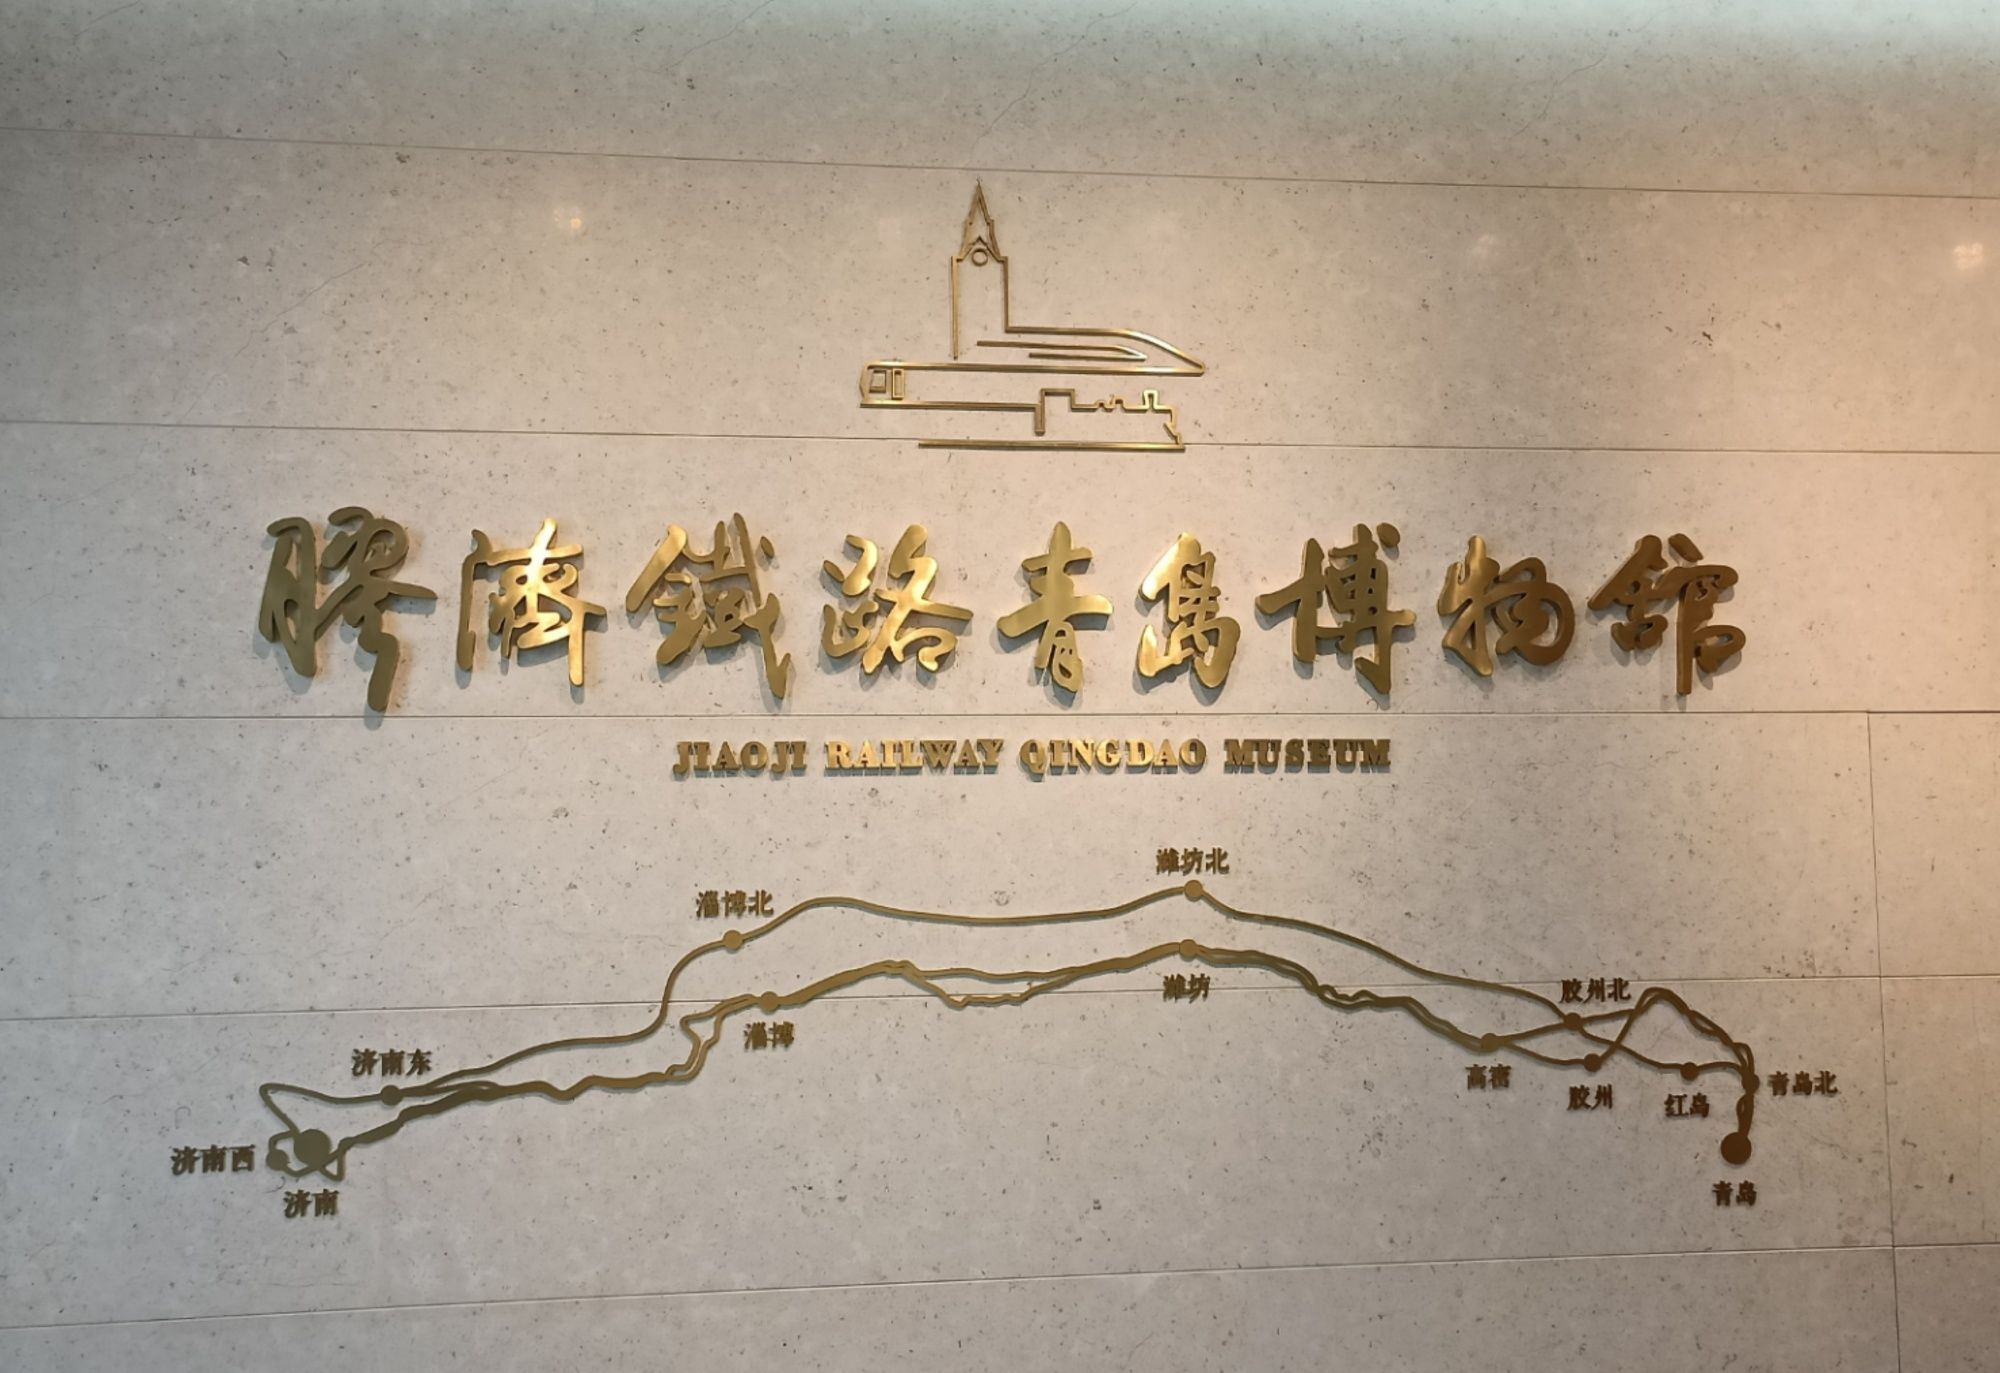 胶济铁路青岛博物馆开馆 承载山东第一条铁路历史